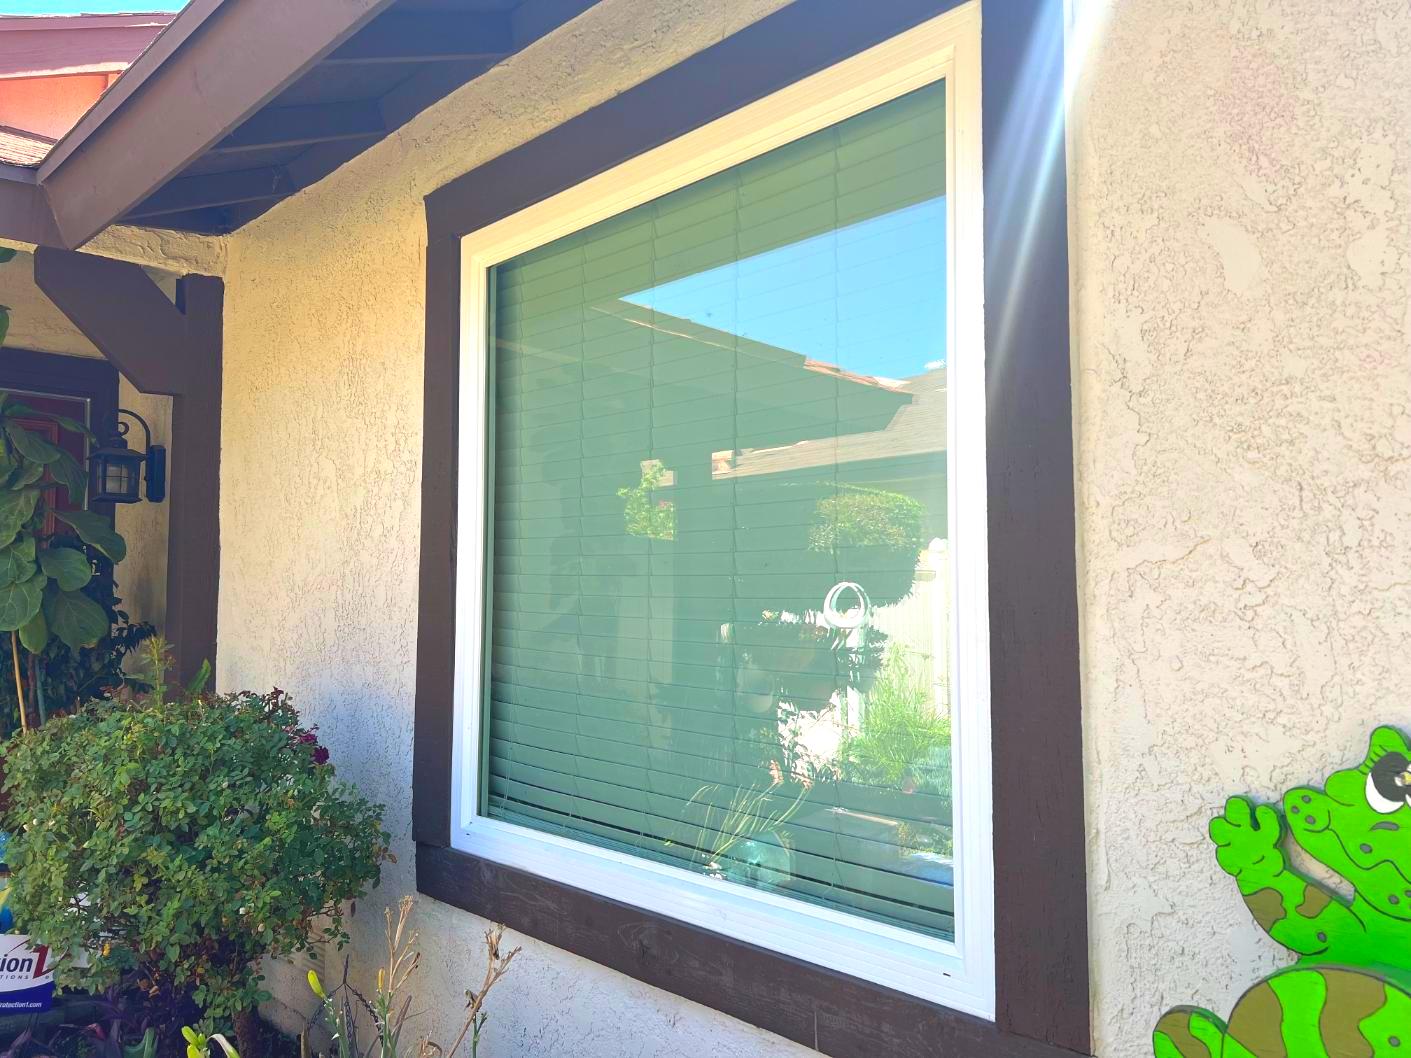 Window & Patio Door Replacement in Moreno Valley, CA